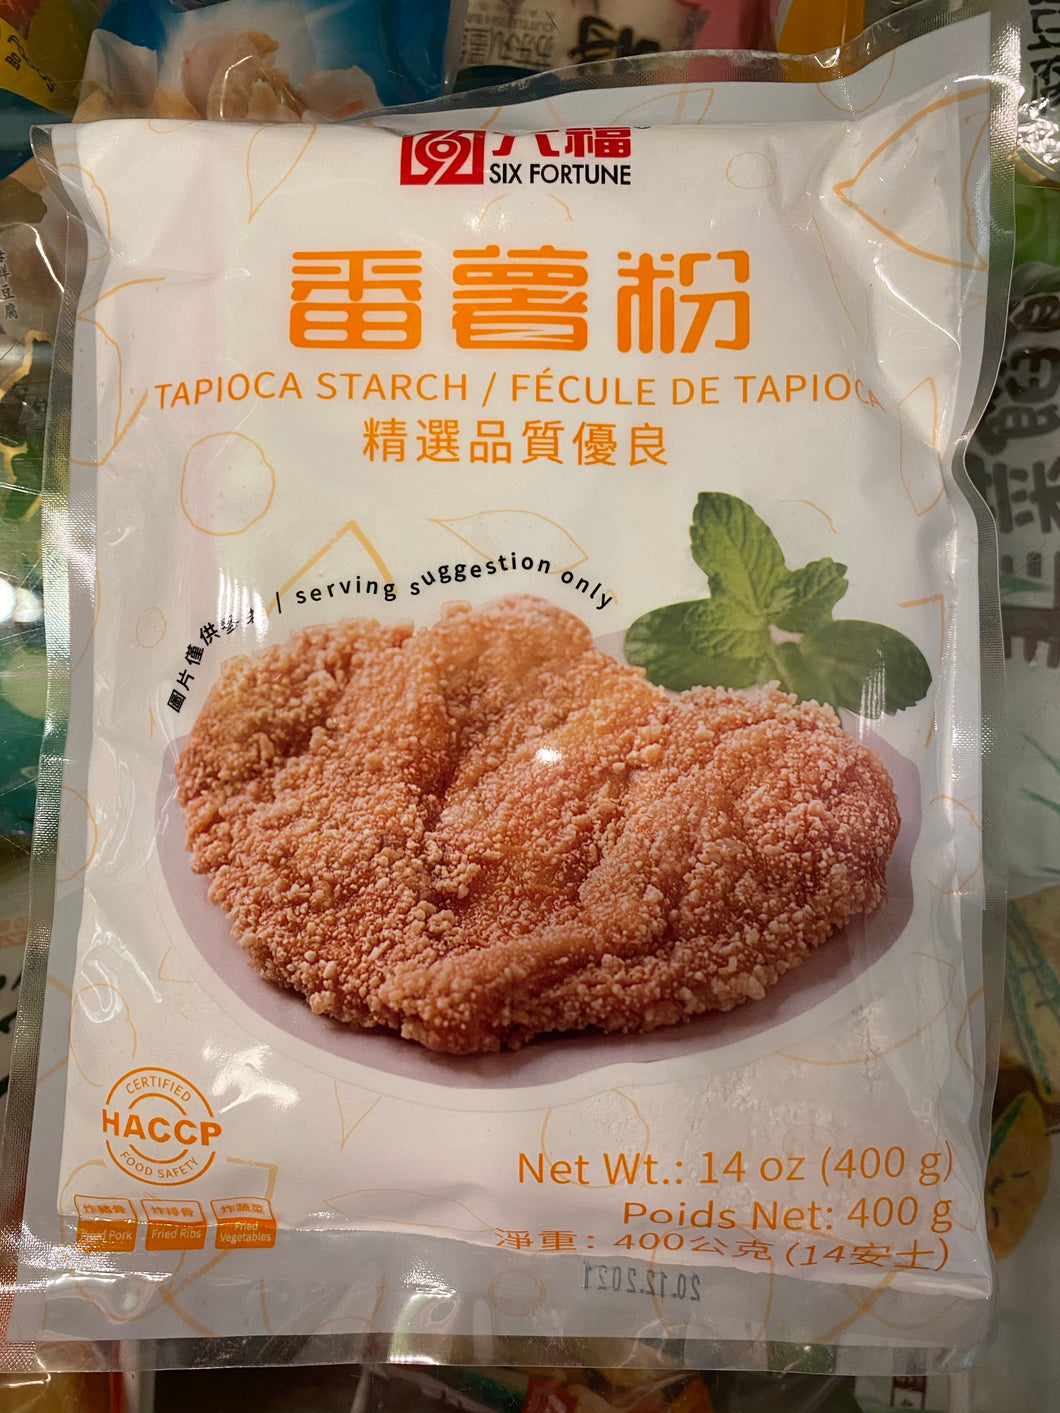 CG - Tapioca Starch (sweet potato powder)